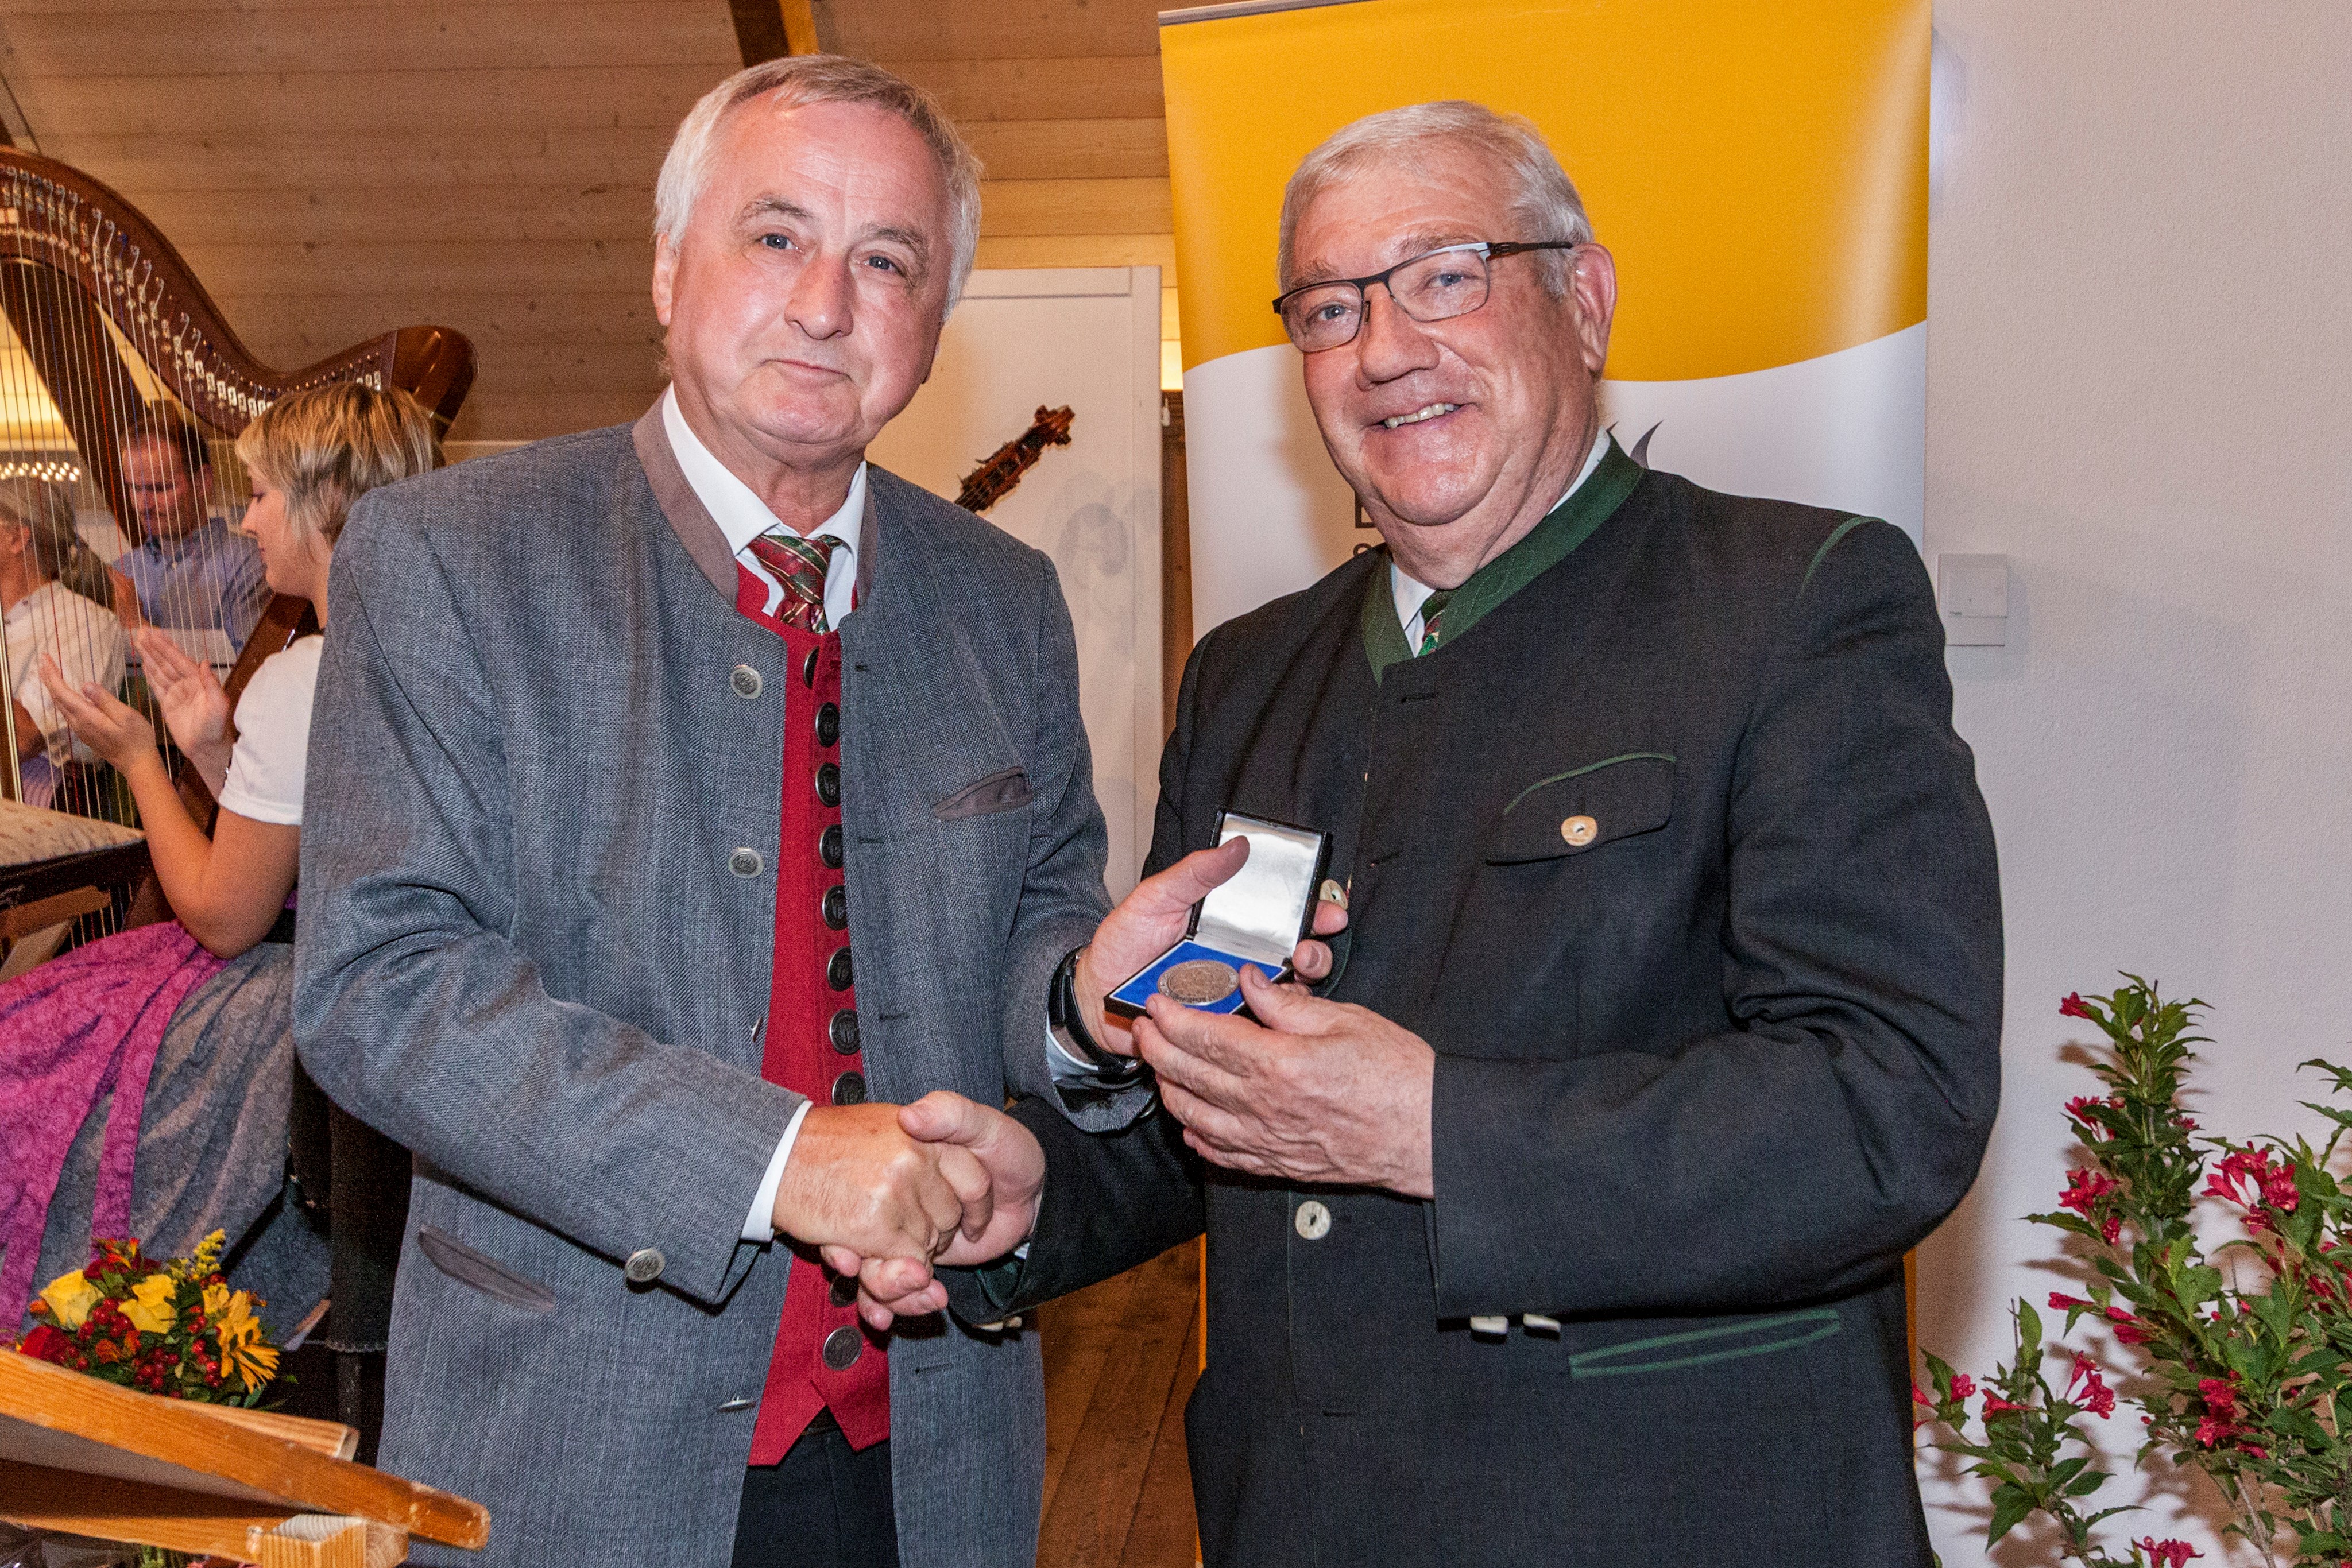 Bezirkstagspräsident Jürgen Reichert (links) zeichnete Staatsminister a. D. Josef Miller für sein Engagement mit der Sieben-Schwaben-Medaille aus.